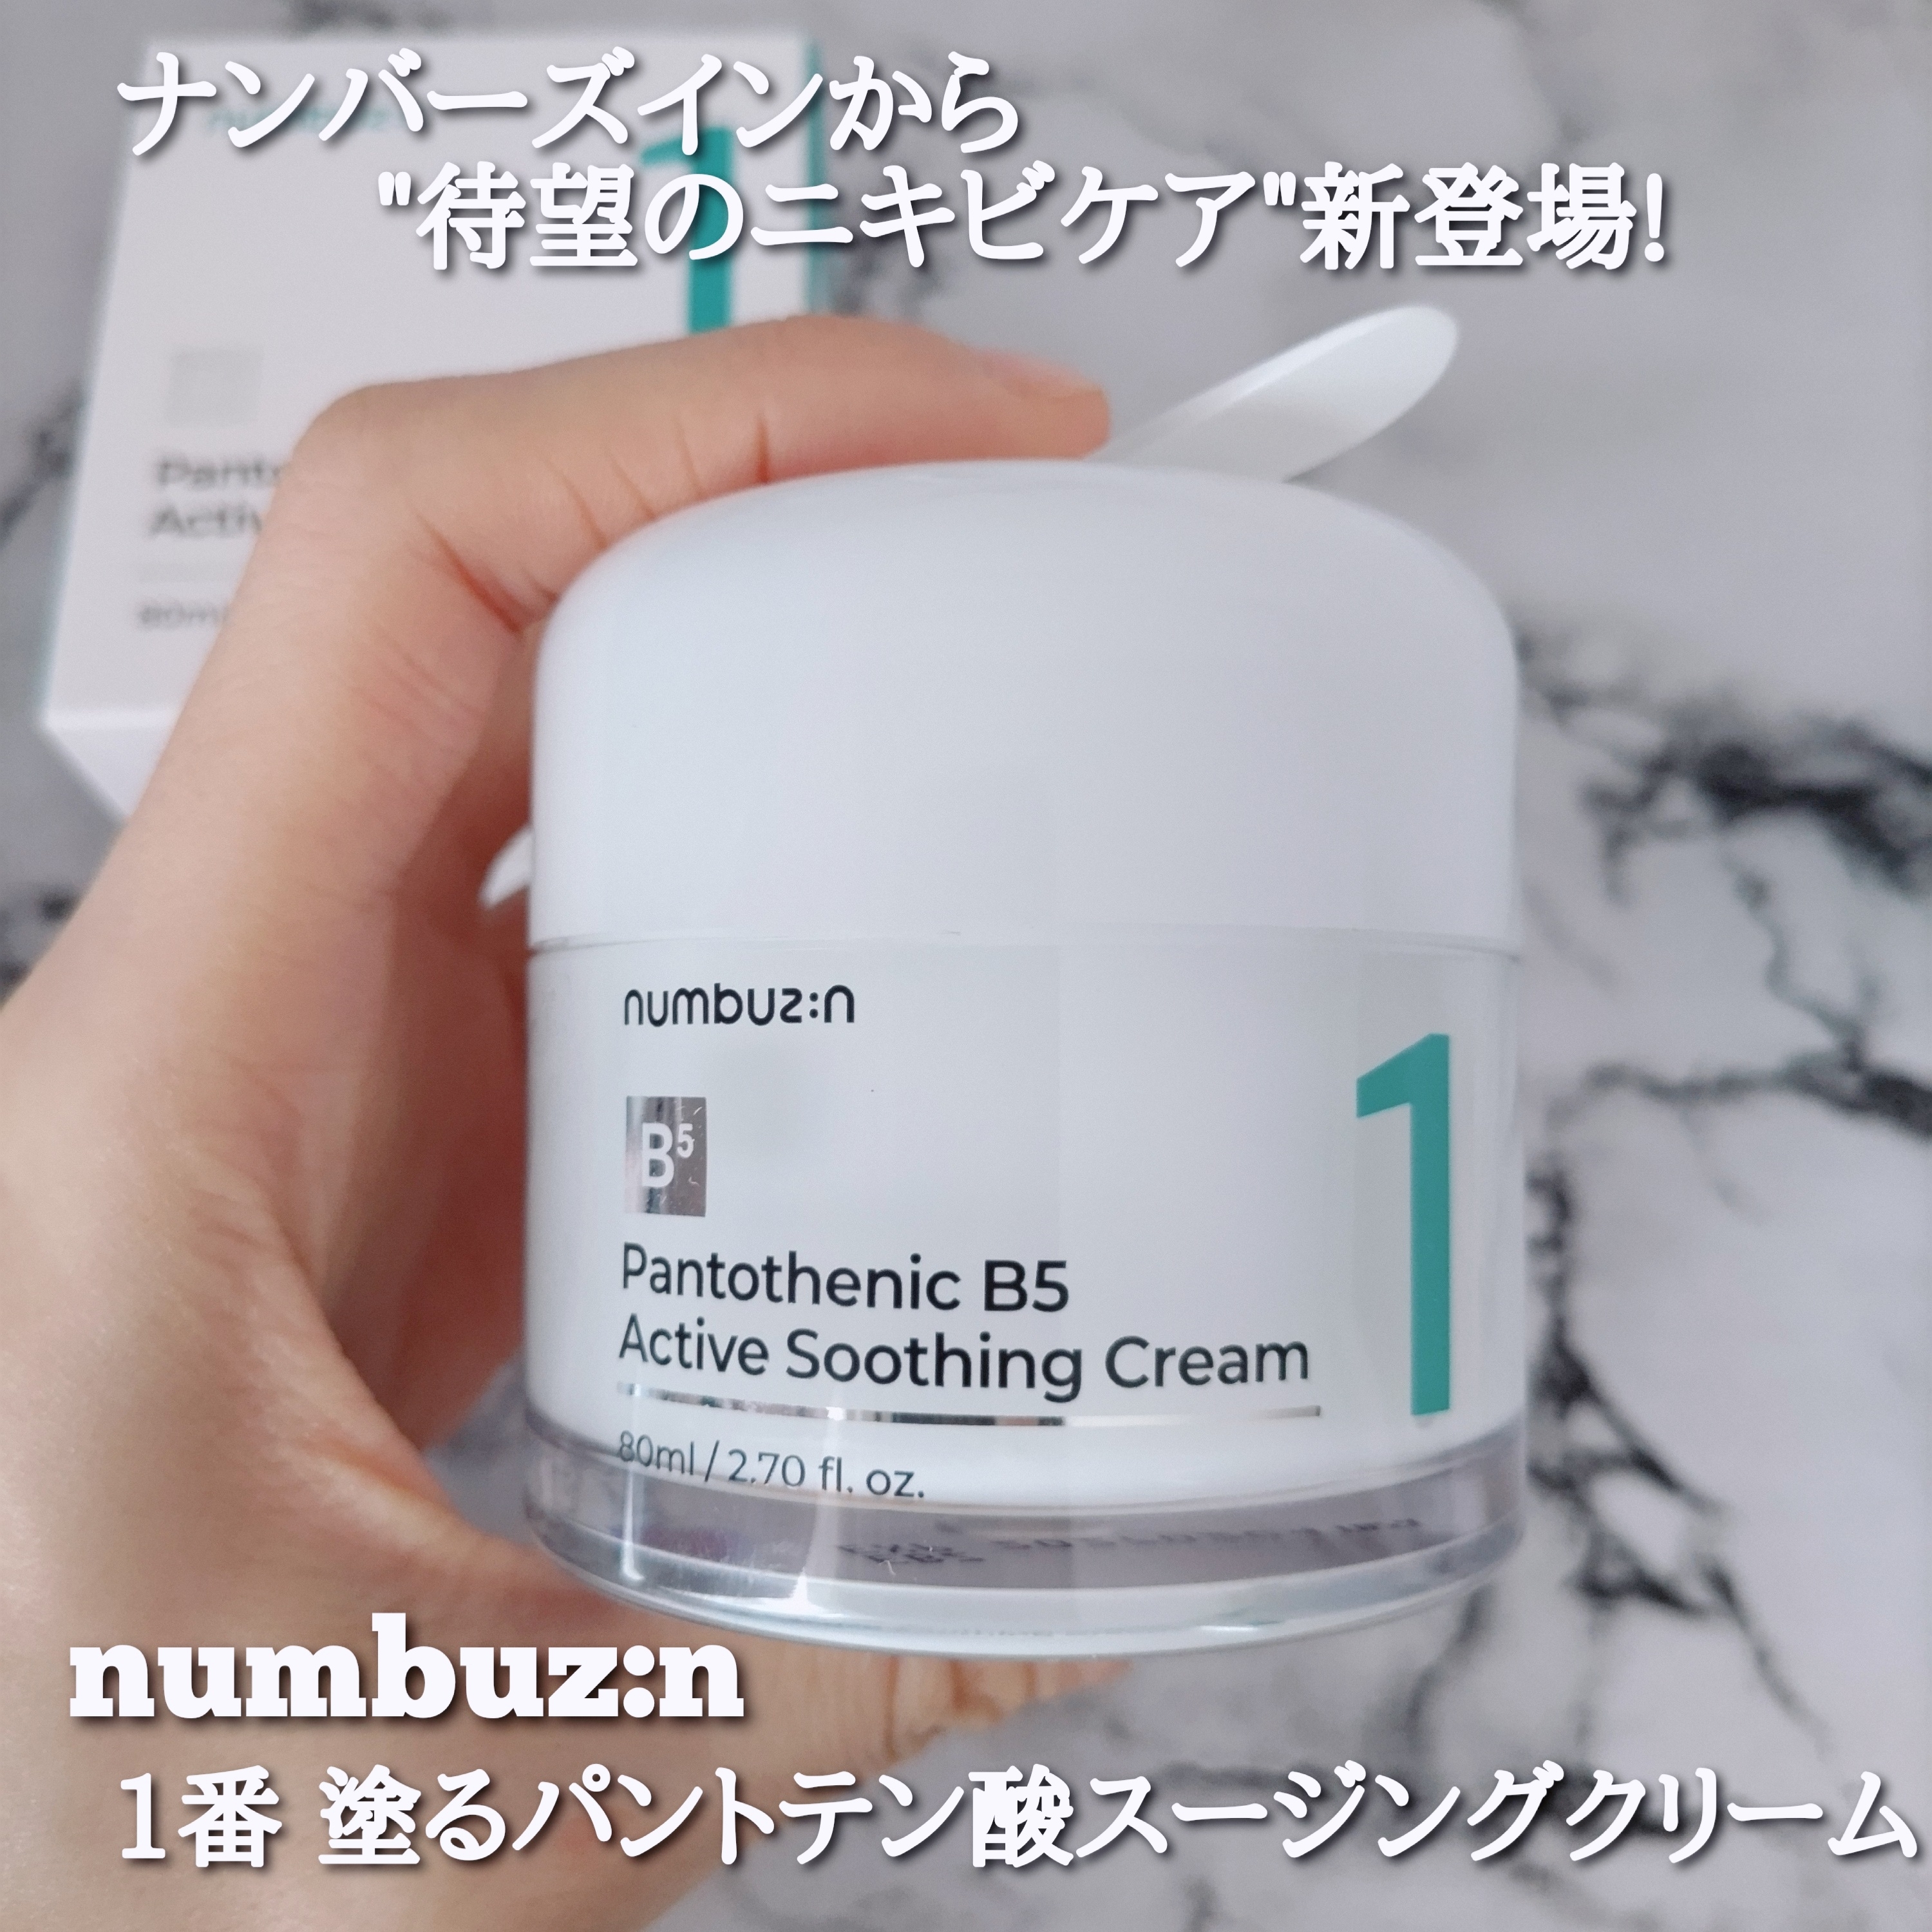 numbuzin(ナンバーズイン) 1番 塗るパントテン酸スージングクリームの良い点・メリットに関するYuKaRi♡さんの口コミ画像1